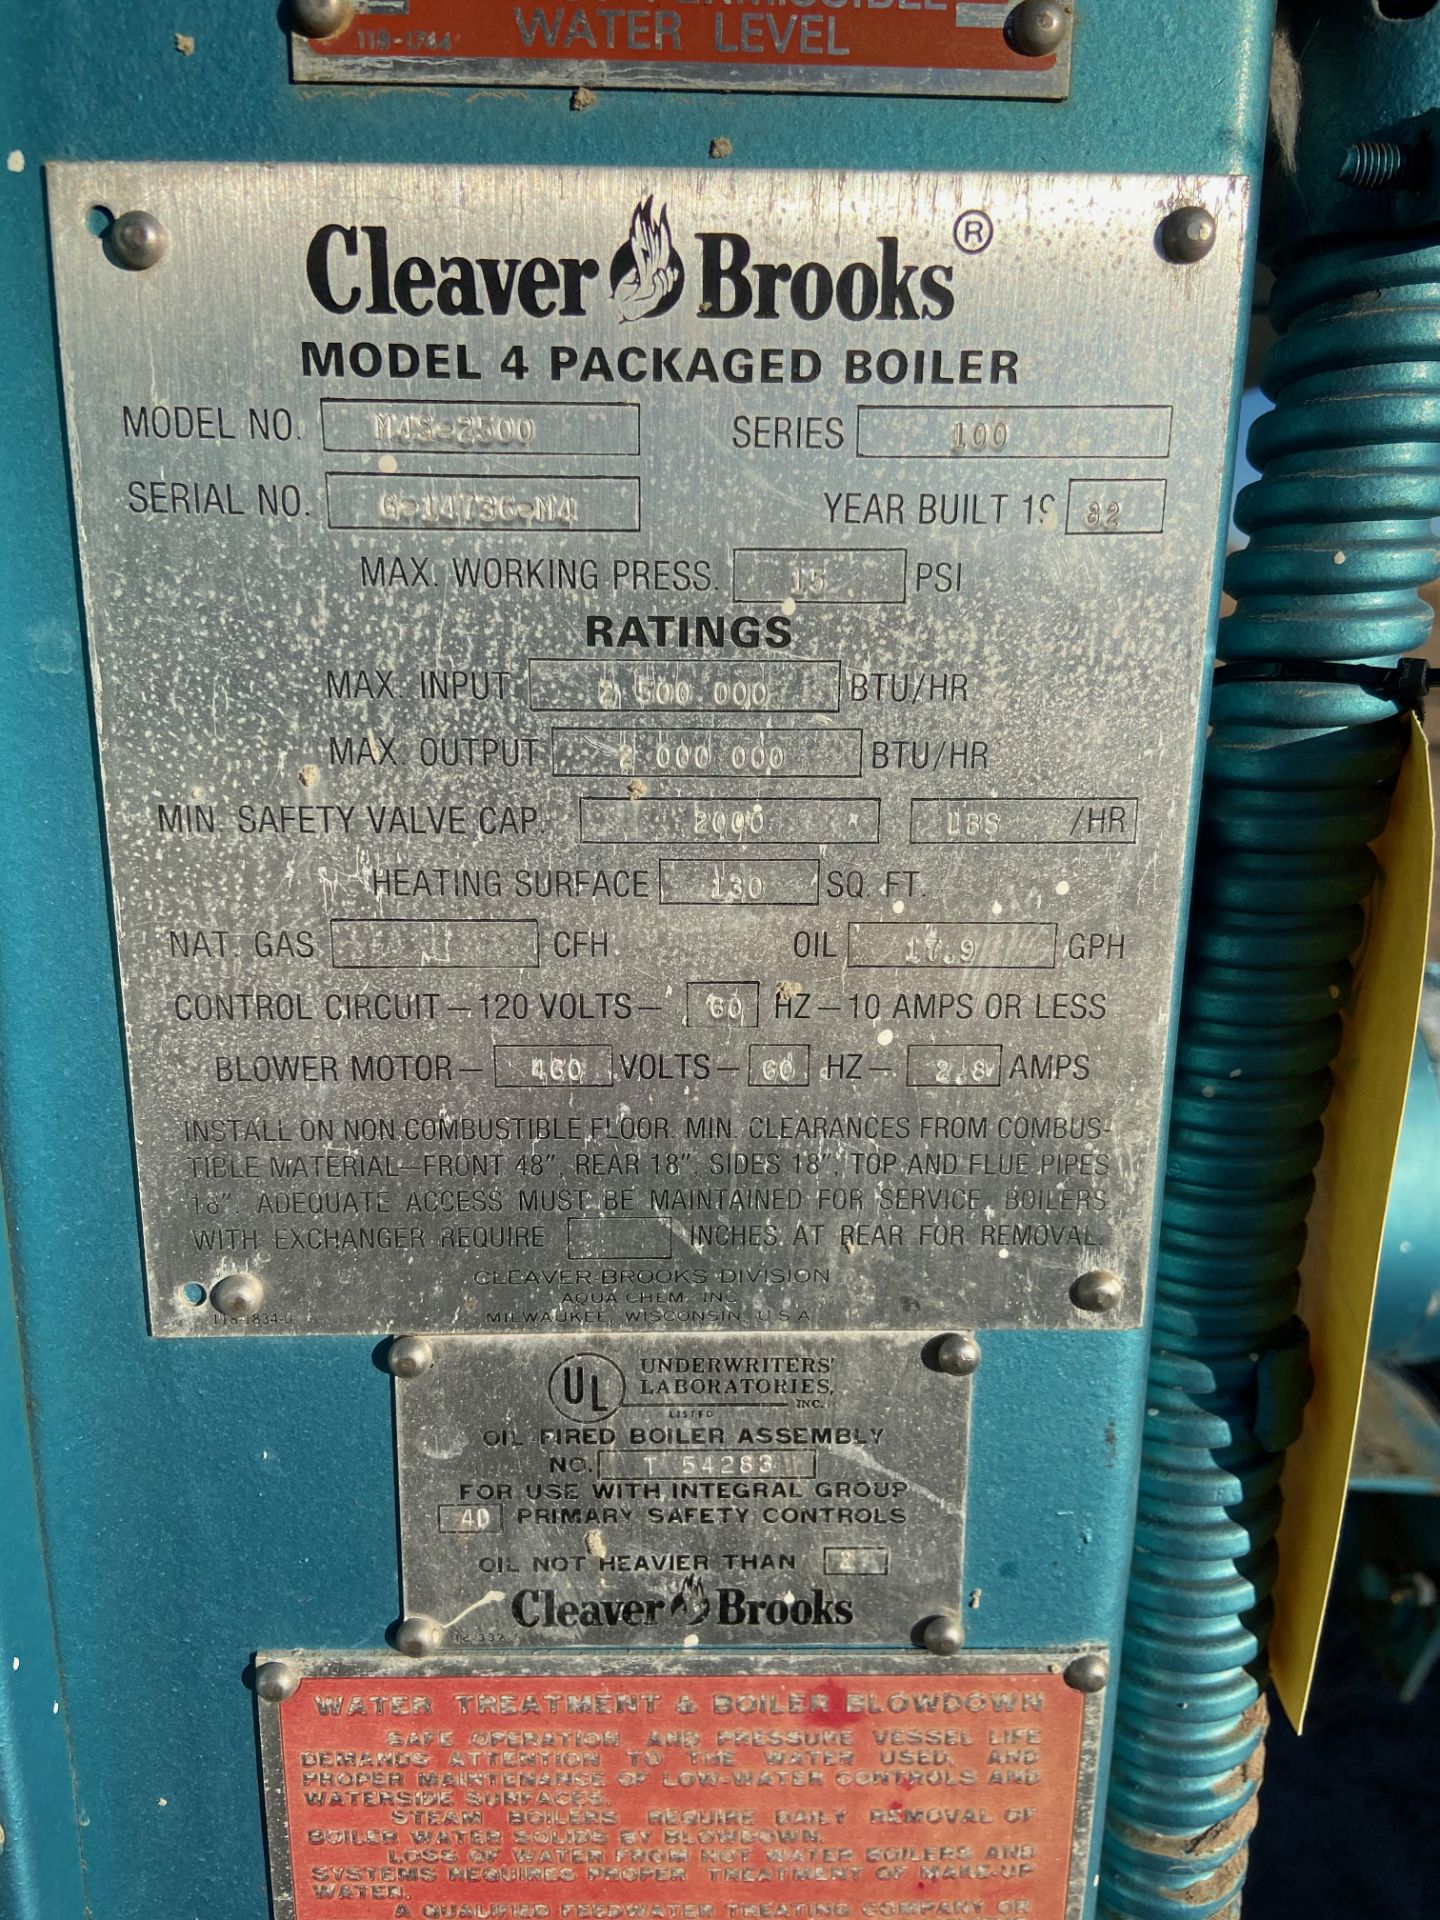 Cleaver Brooks Diesel Steam Boiler, Model# M4S-2500, Serial# G-14736-M4, Rigging/ Loading Fee: $20 - Image 2 of 5